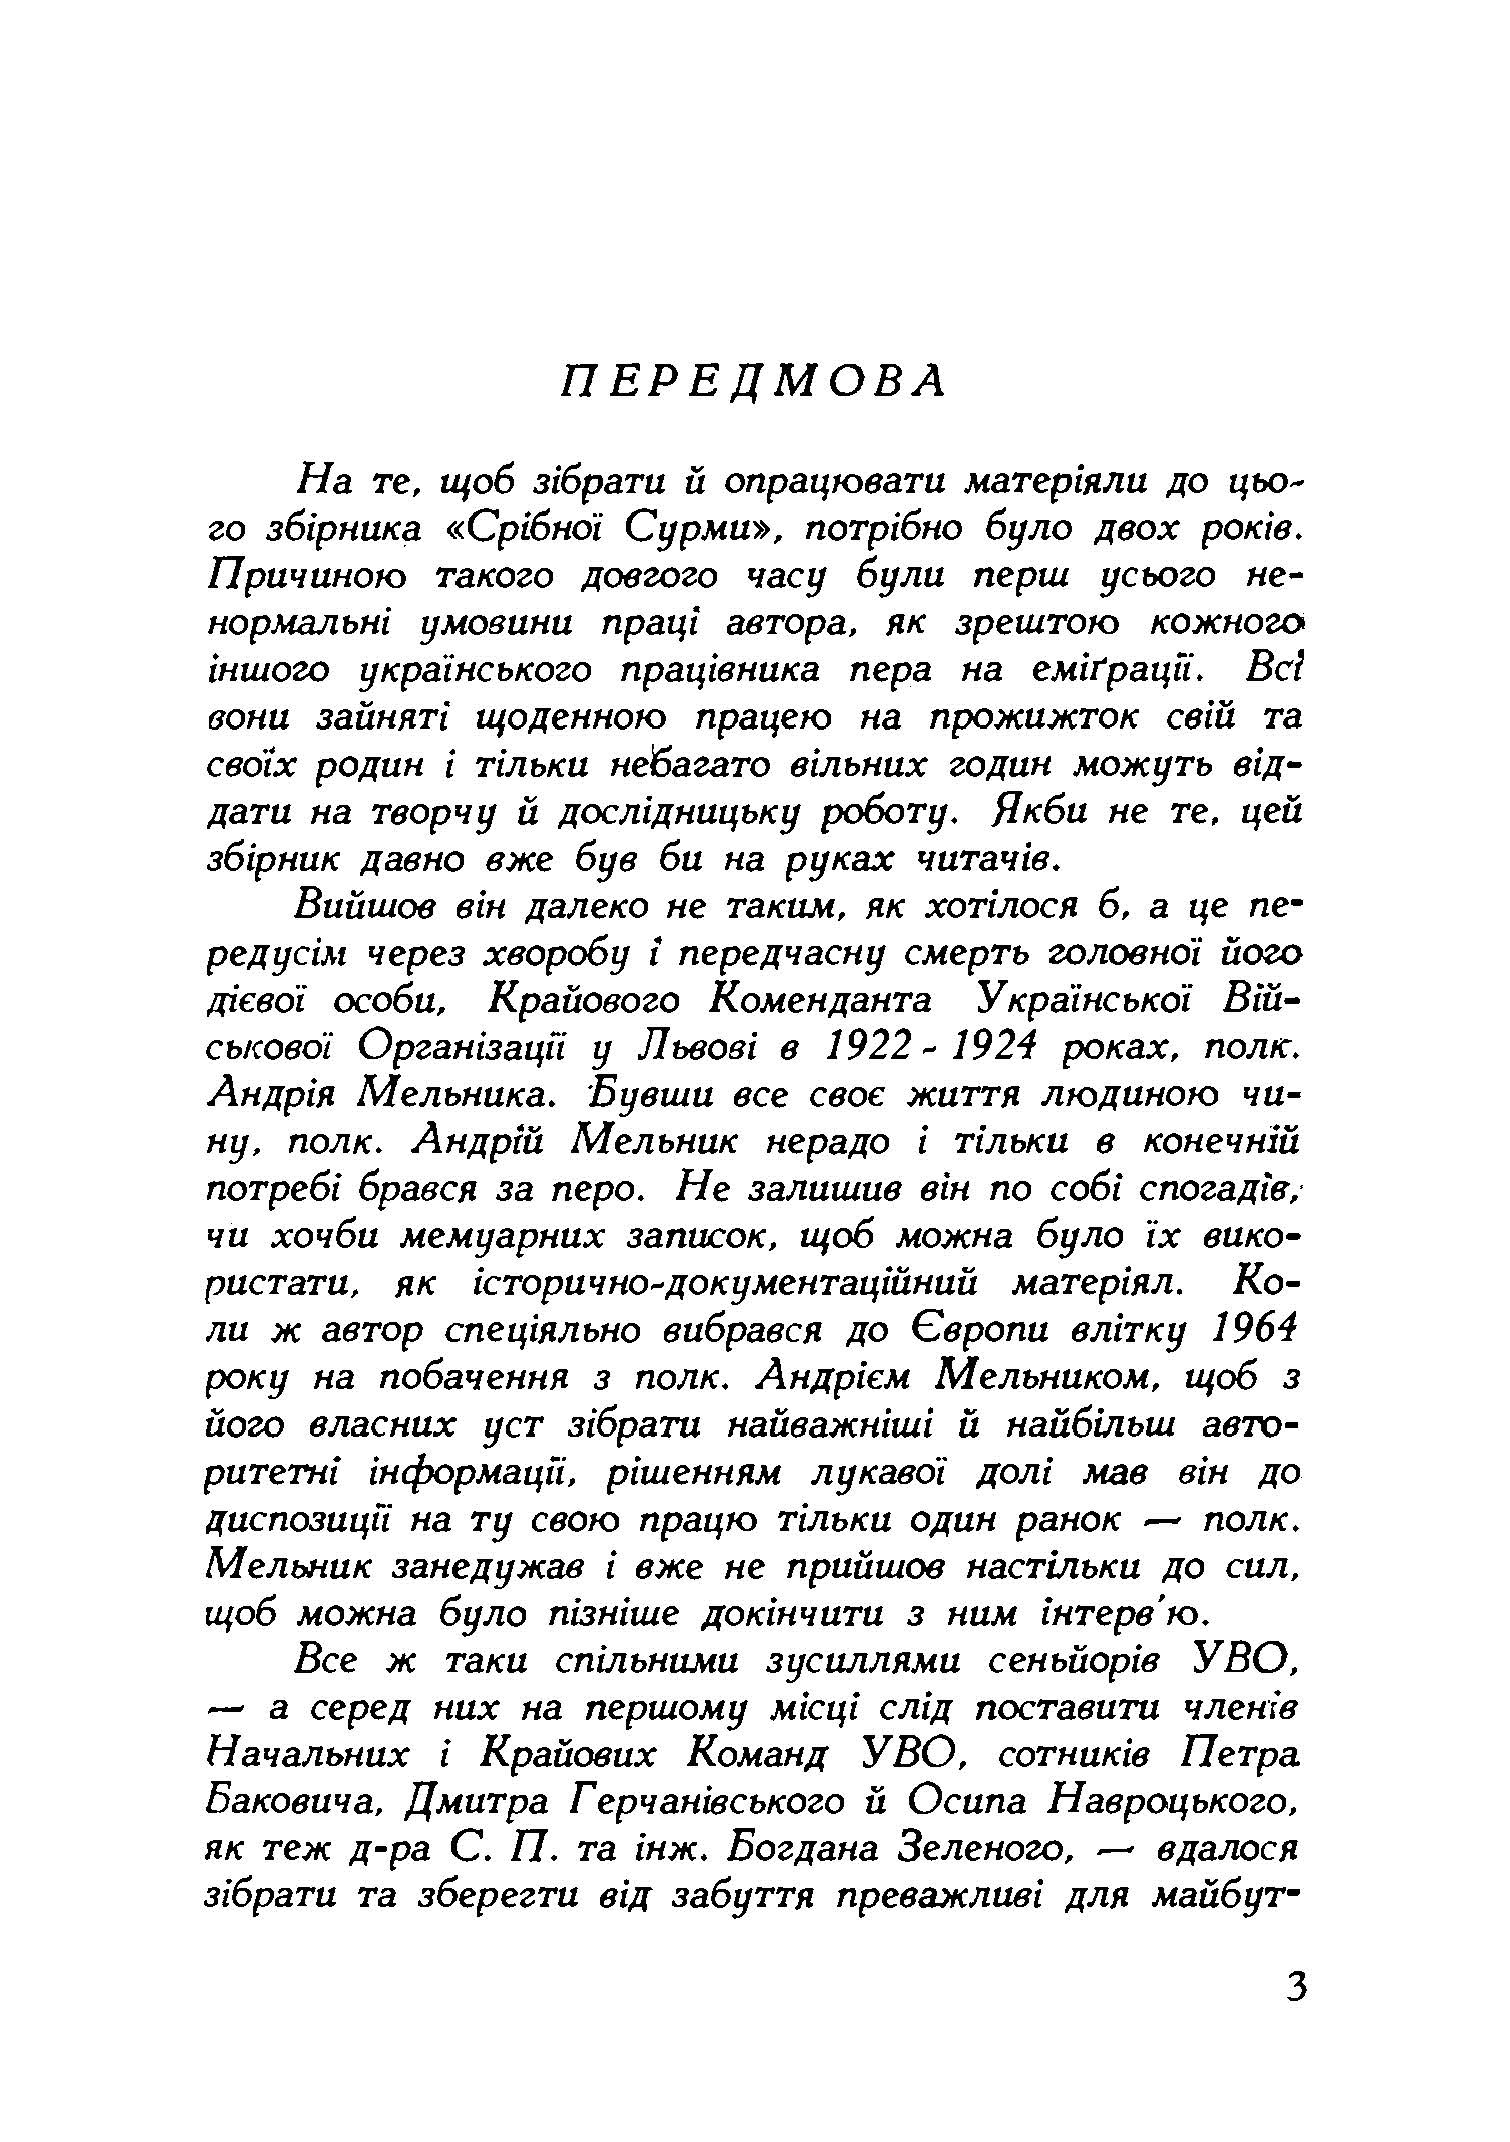 Власним руслом. Українська військова організація від осені 1922 до літа 1924 року. Автор — Книш Зіновій. 